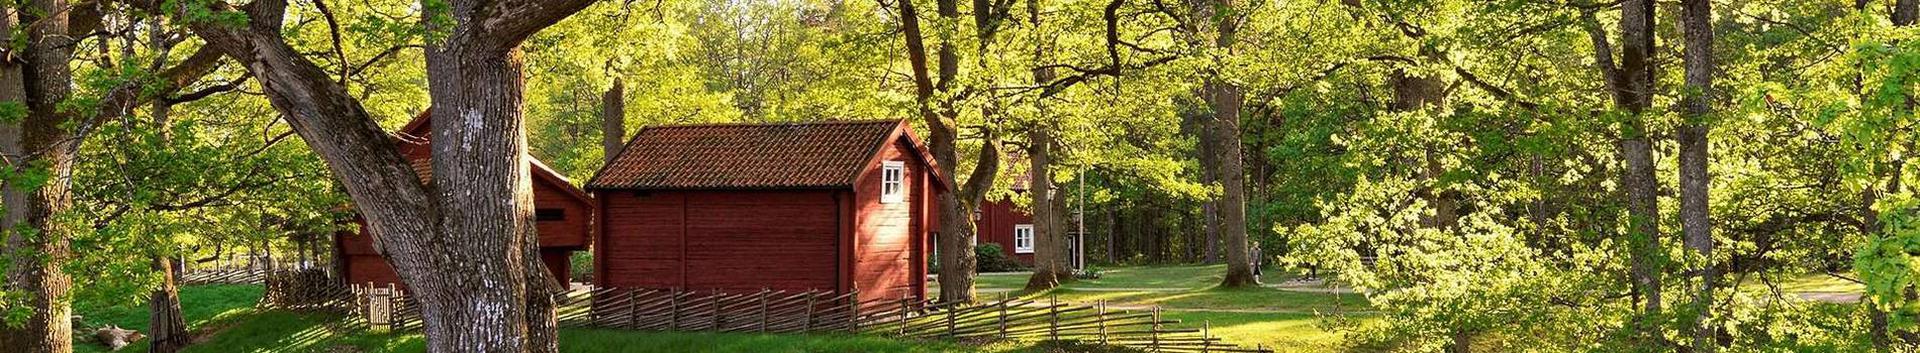 Lammasmäe Puhkekeskus, Lääne-Virumaal pakub majutust, seminariruume, saunasid ja palju tegevusi nii perele, sõpradele kui firmadele.